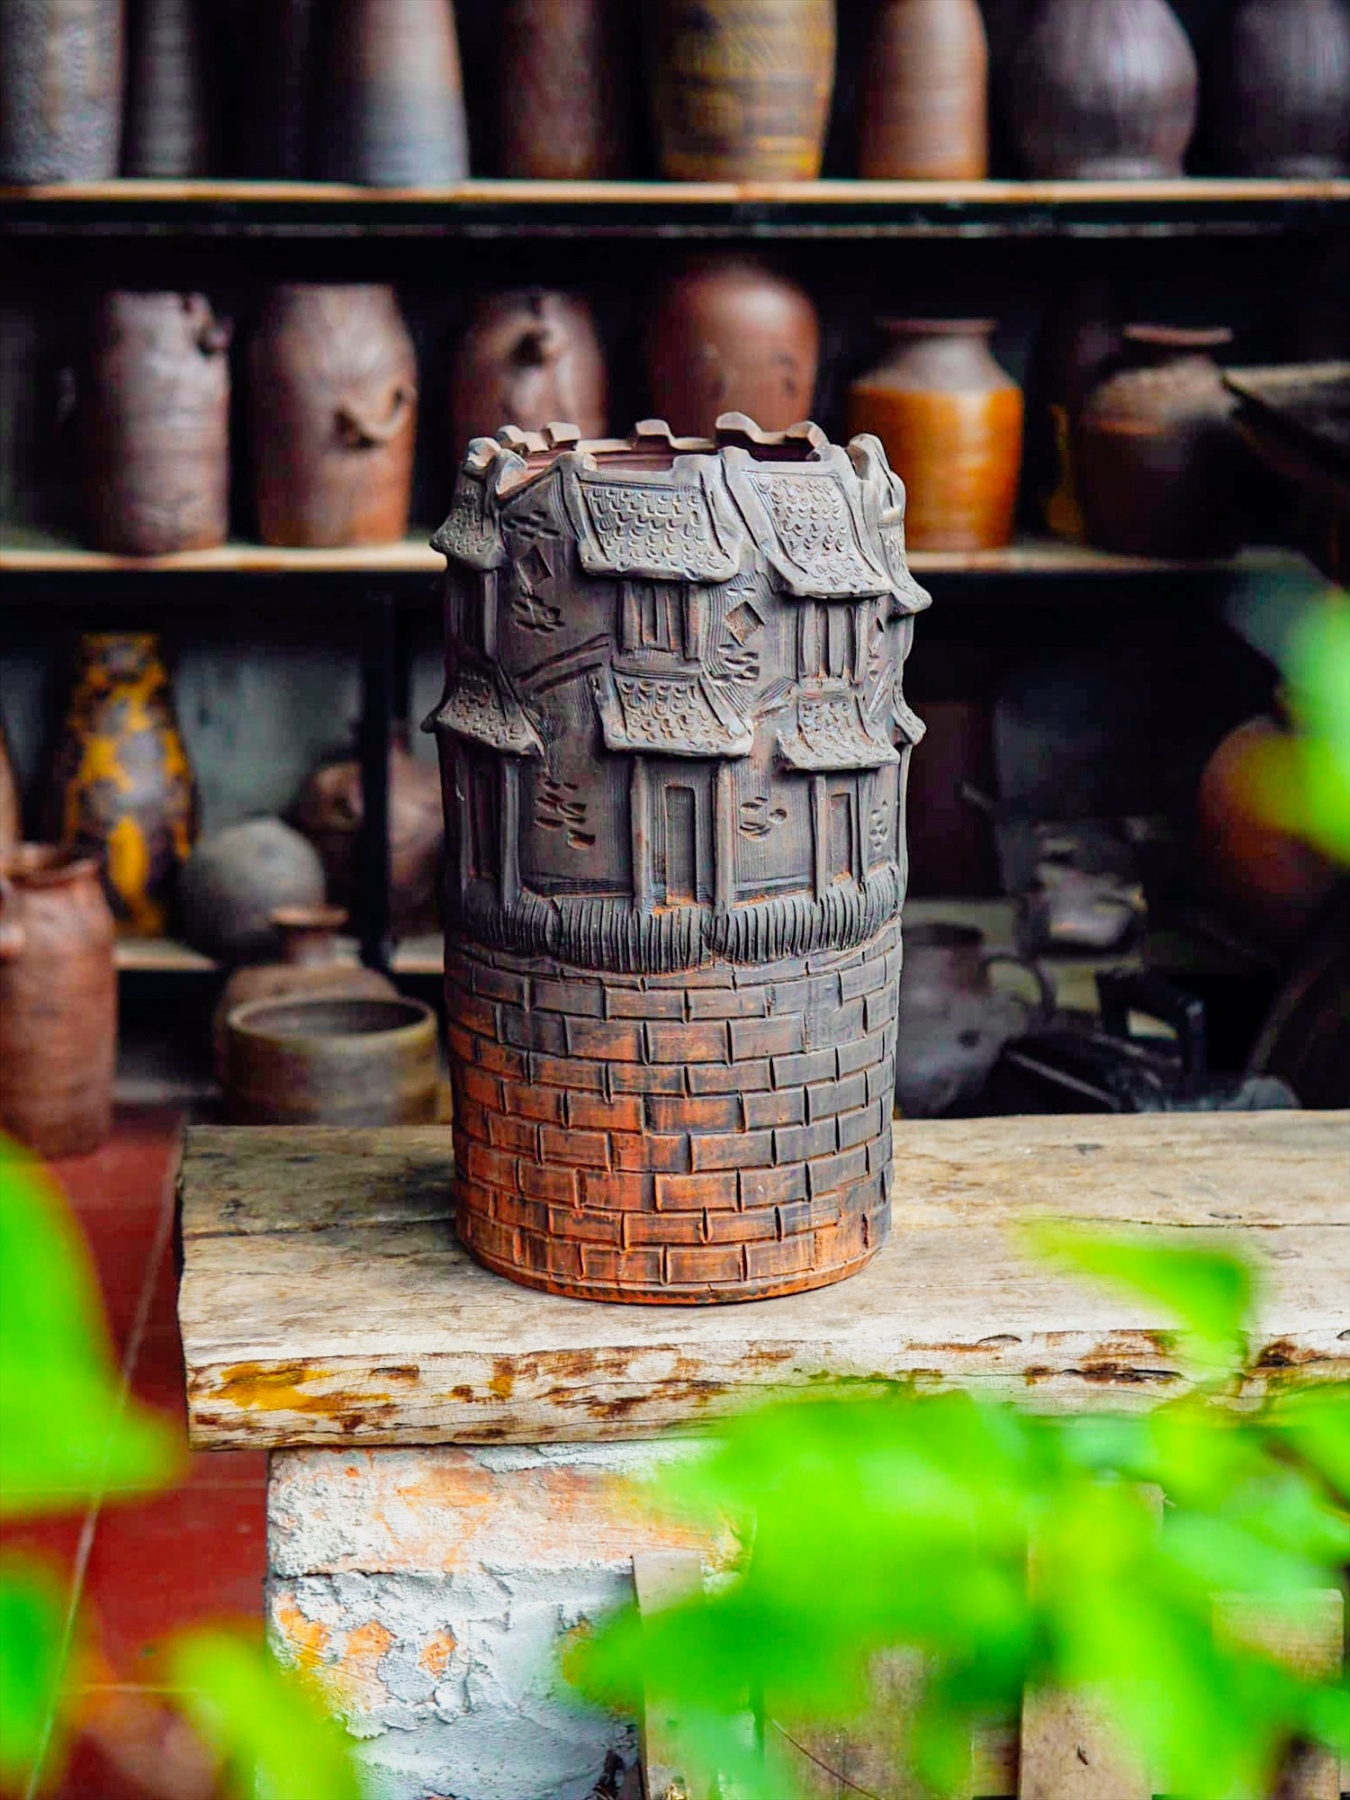 Ngoài tìm mua các sản phẩm gốm trang trí, du khách tìm đến xưởng gốm Hương Canh để check-in cùng những tác phẩm nghệ thuật